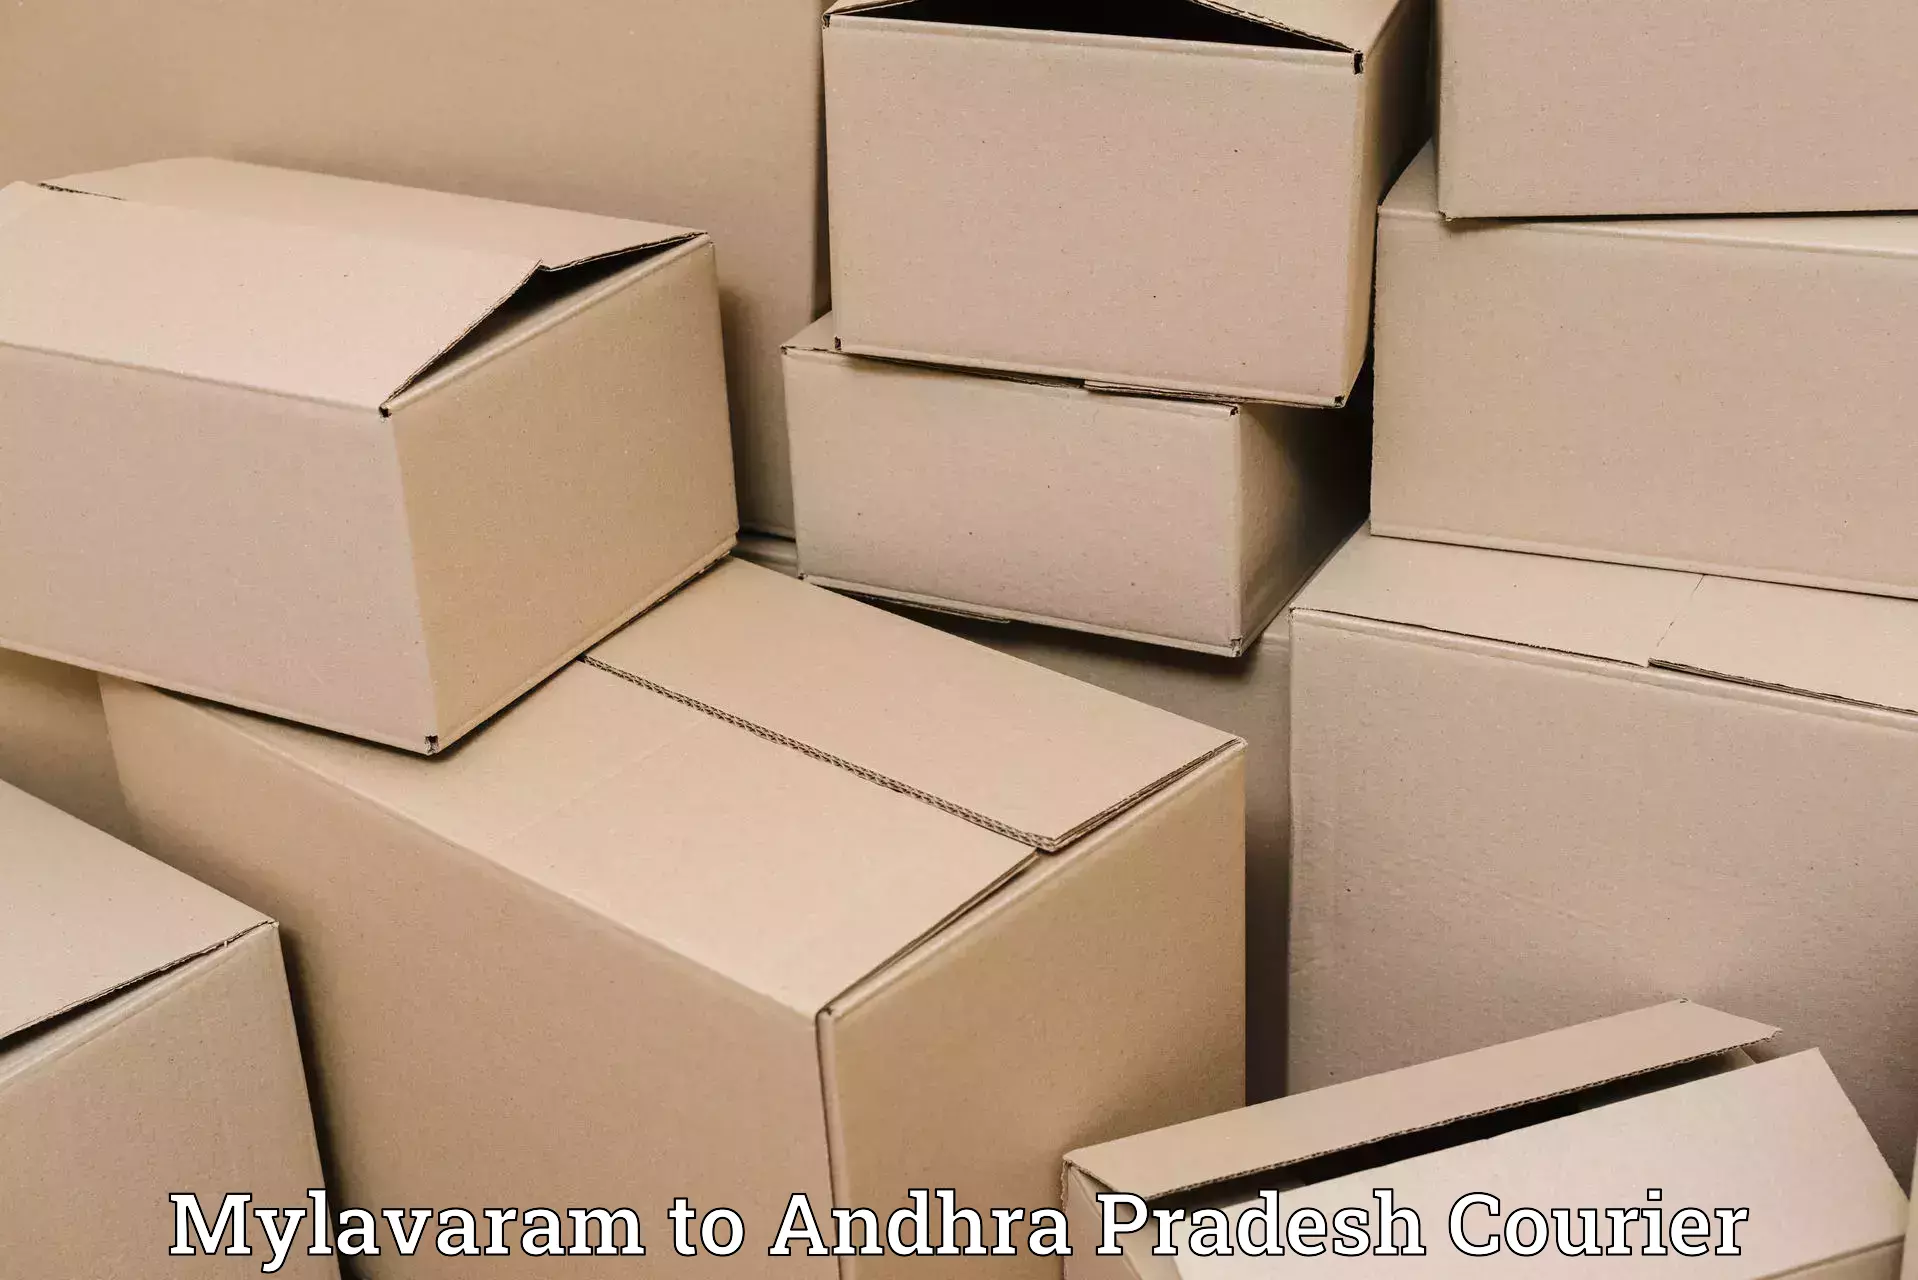 Express package handling Mylavaram to Kuppam